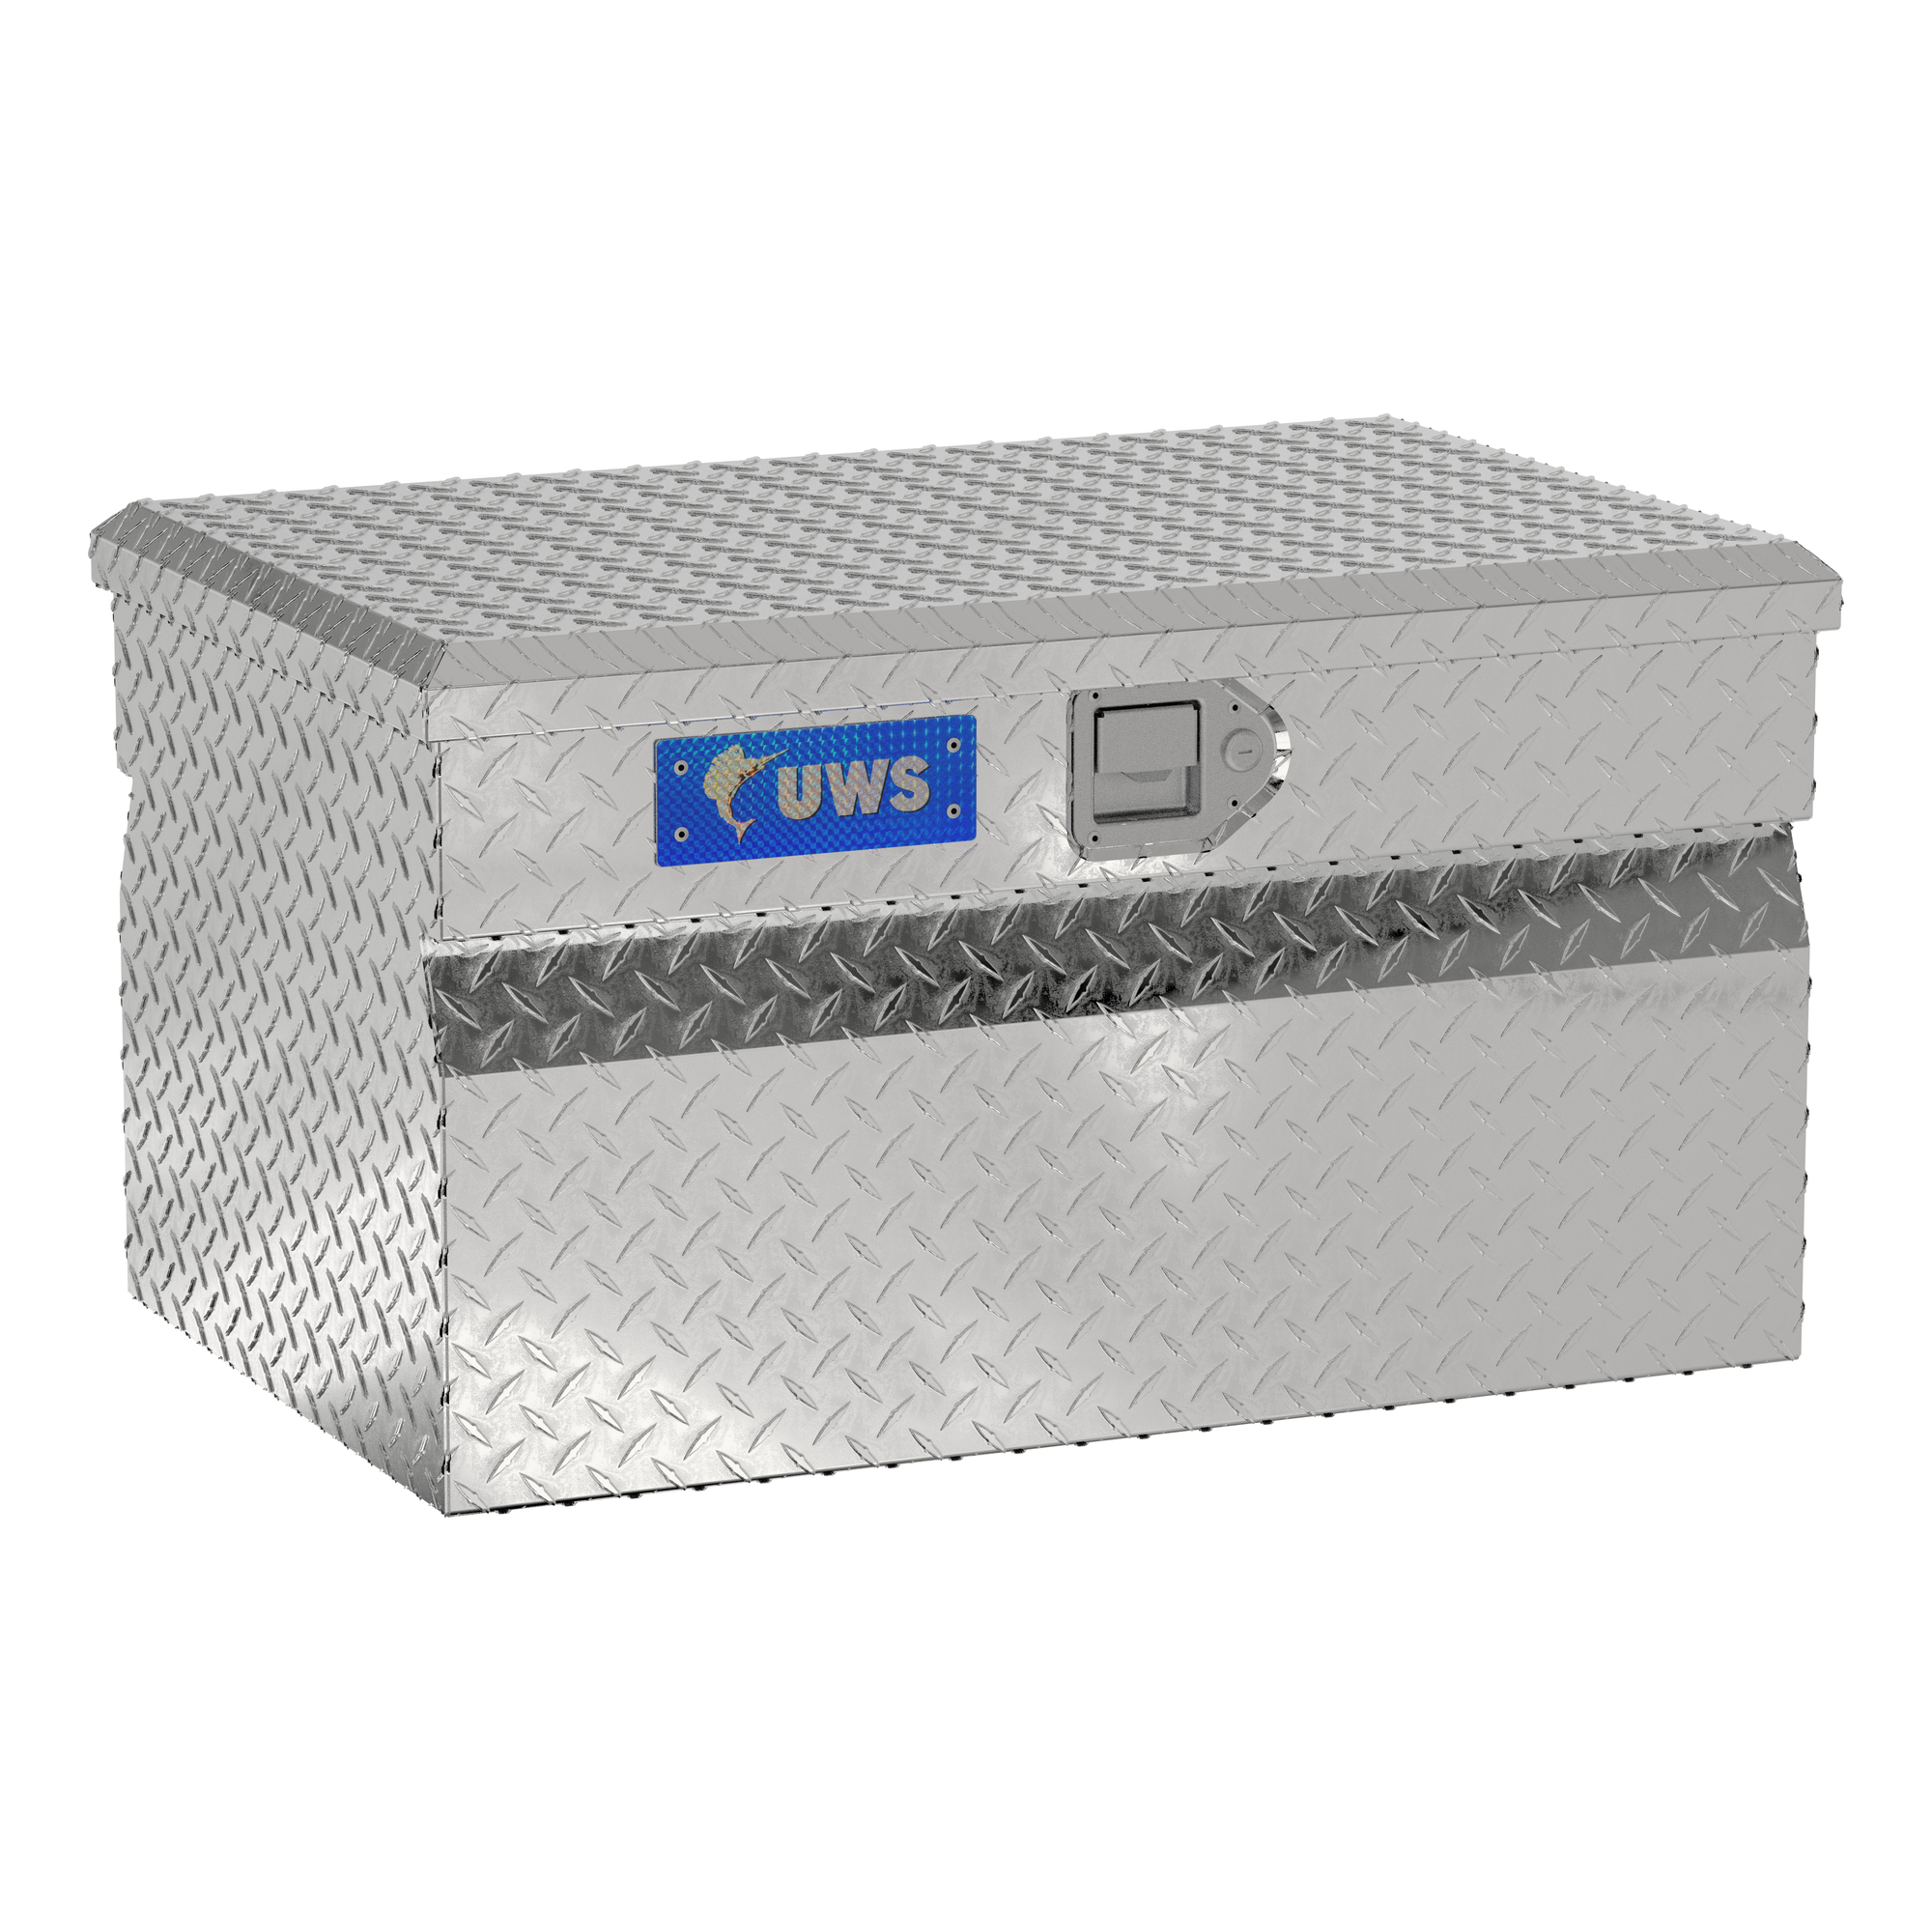 UWS, 30Inch Utility Chest Box, Width 30.875 in, Material Aluminum, Color Finish Bright Aluminum, Model EC20121